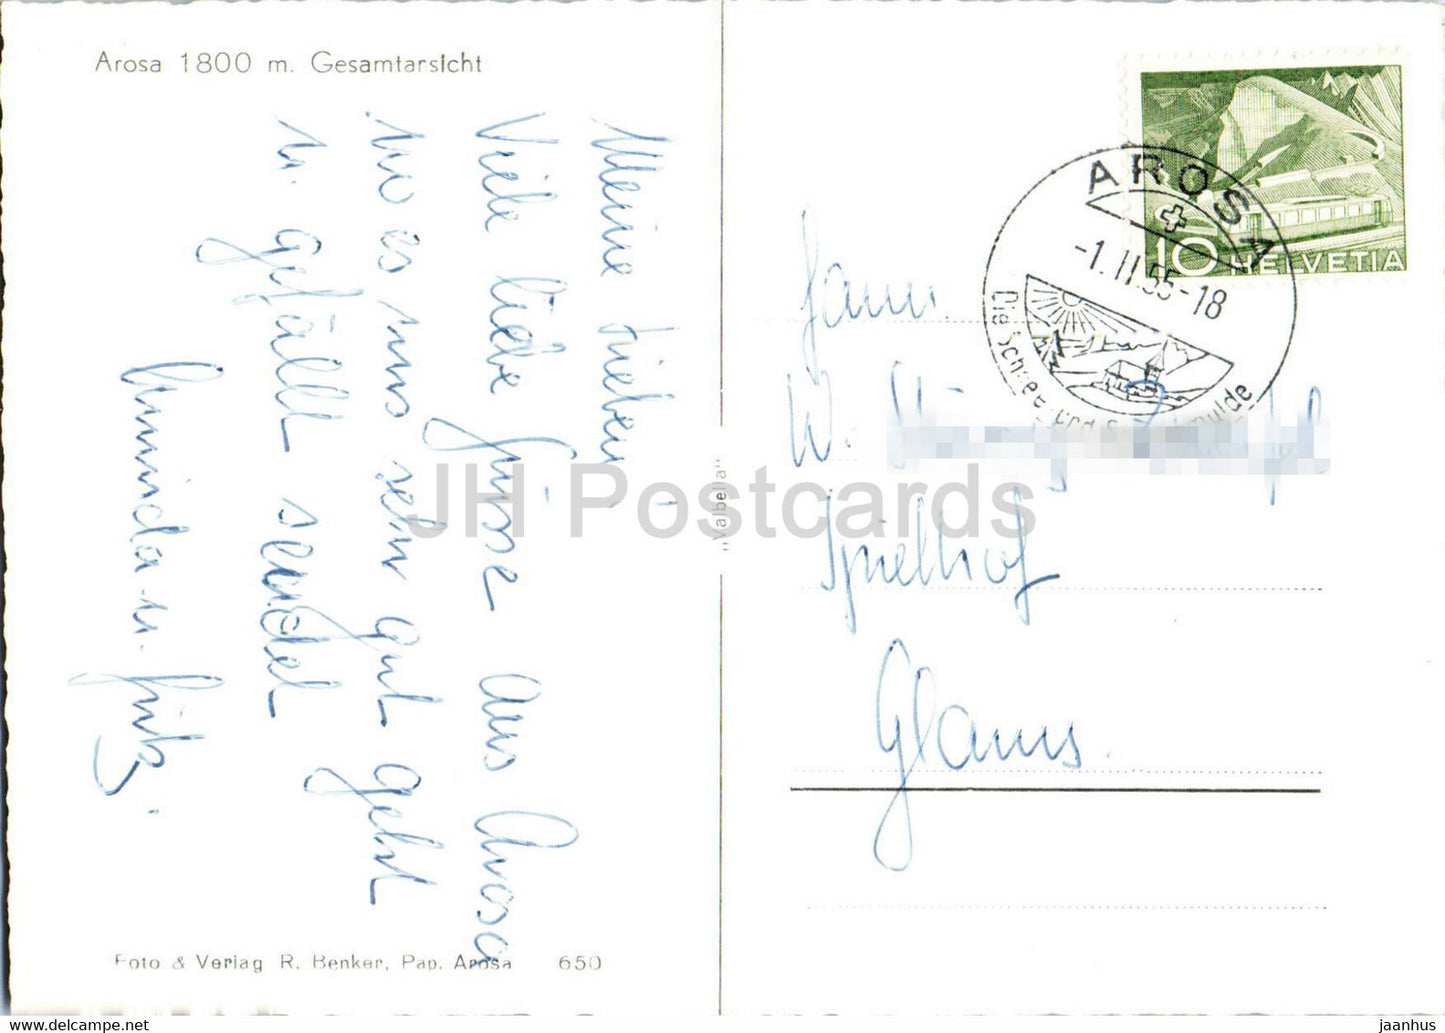 Arosa 1800 m - Gesamtansicht - 650 - alte Postkarte - 1955 - Schweiz - gebraucht